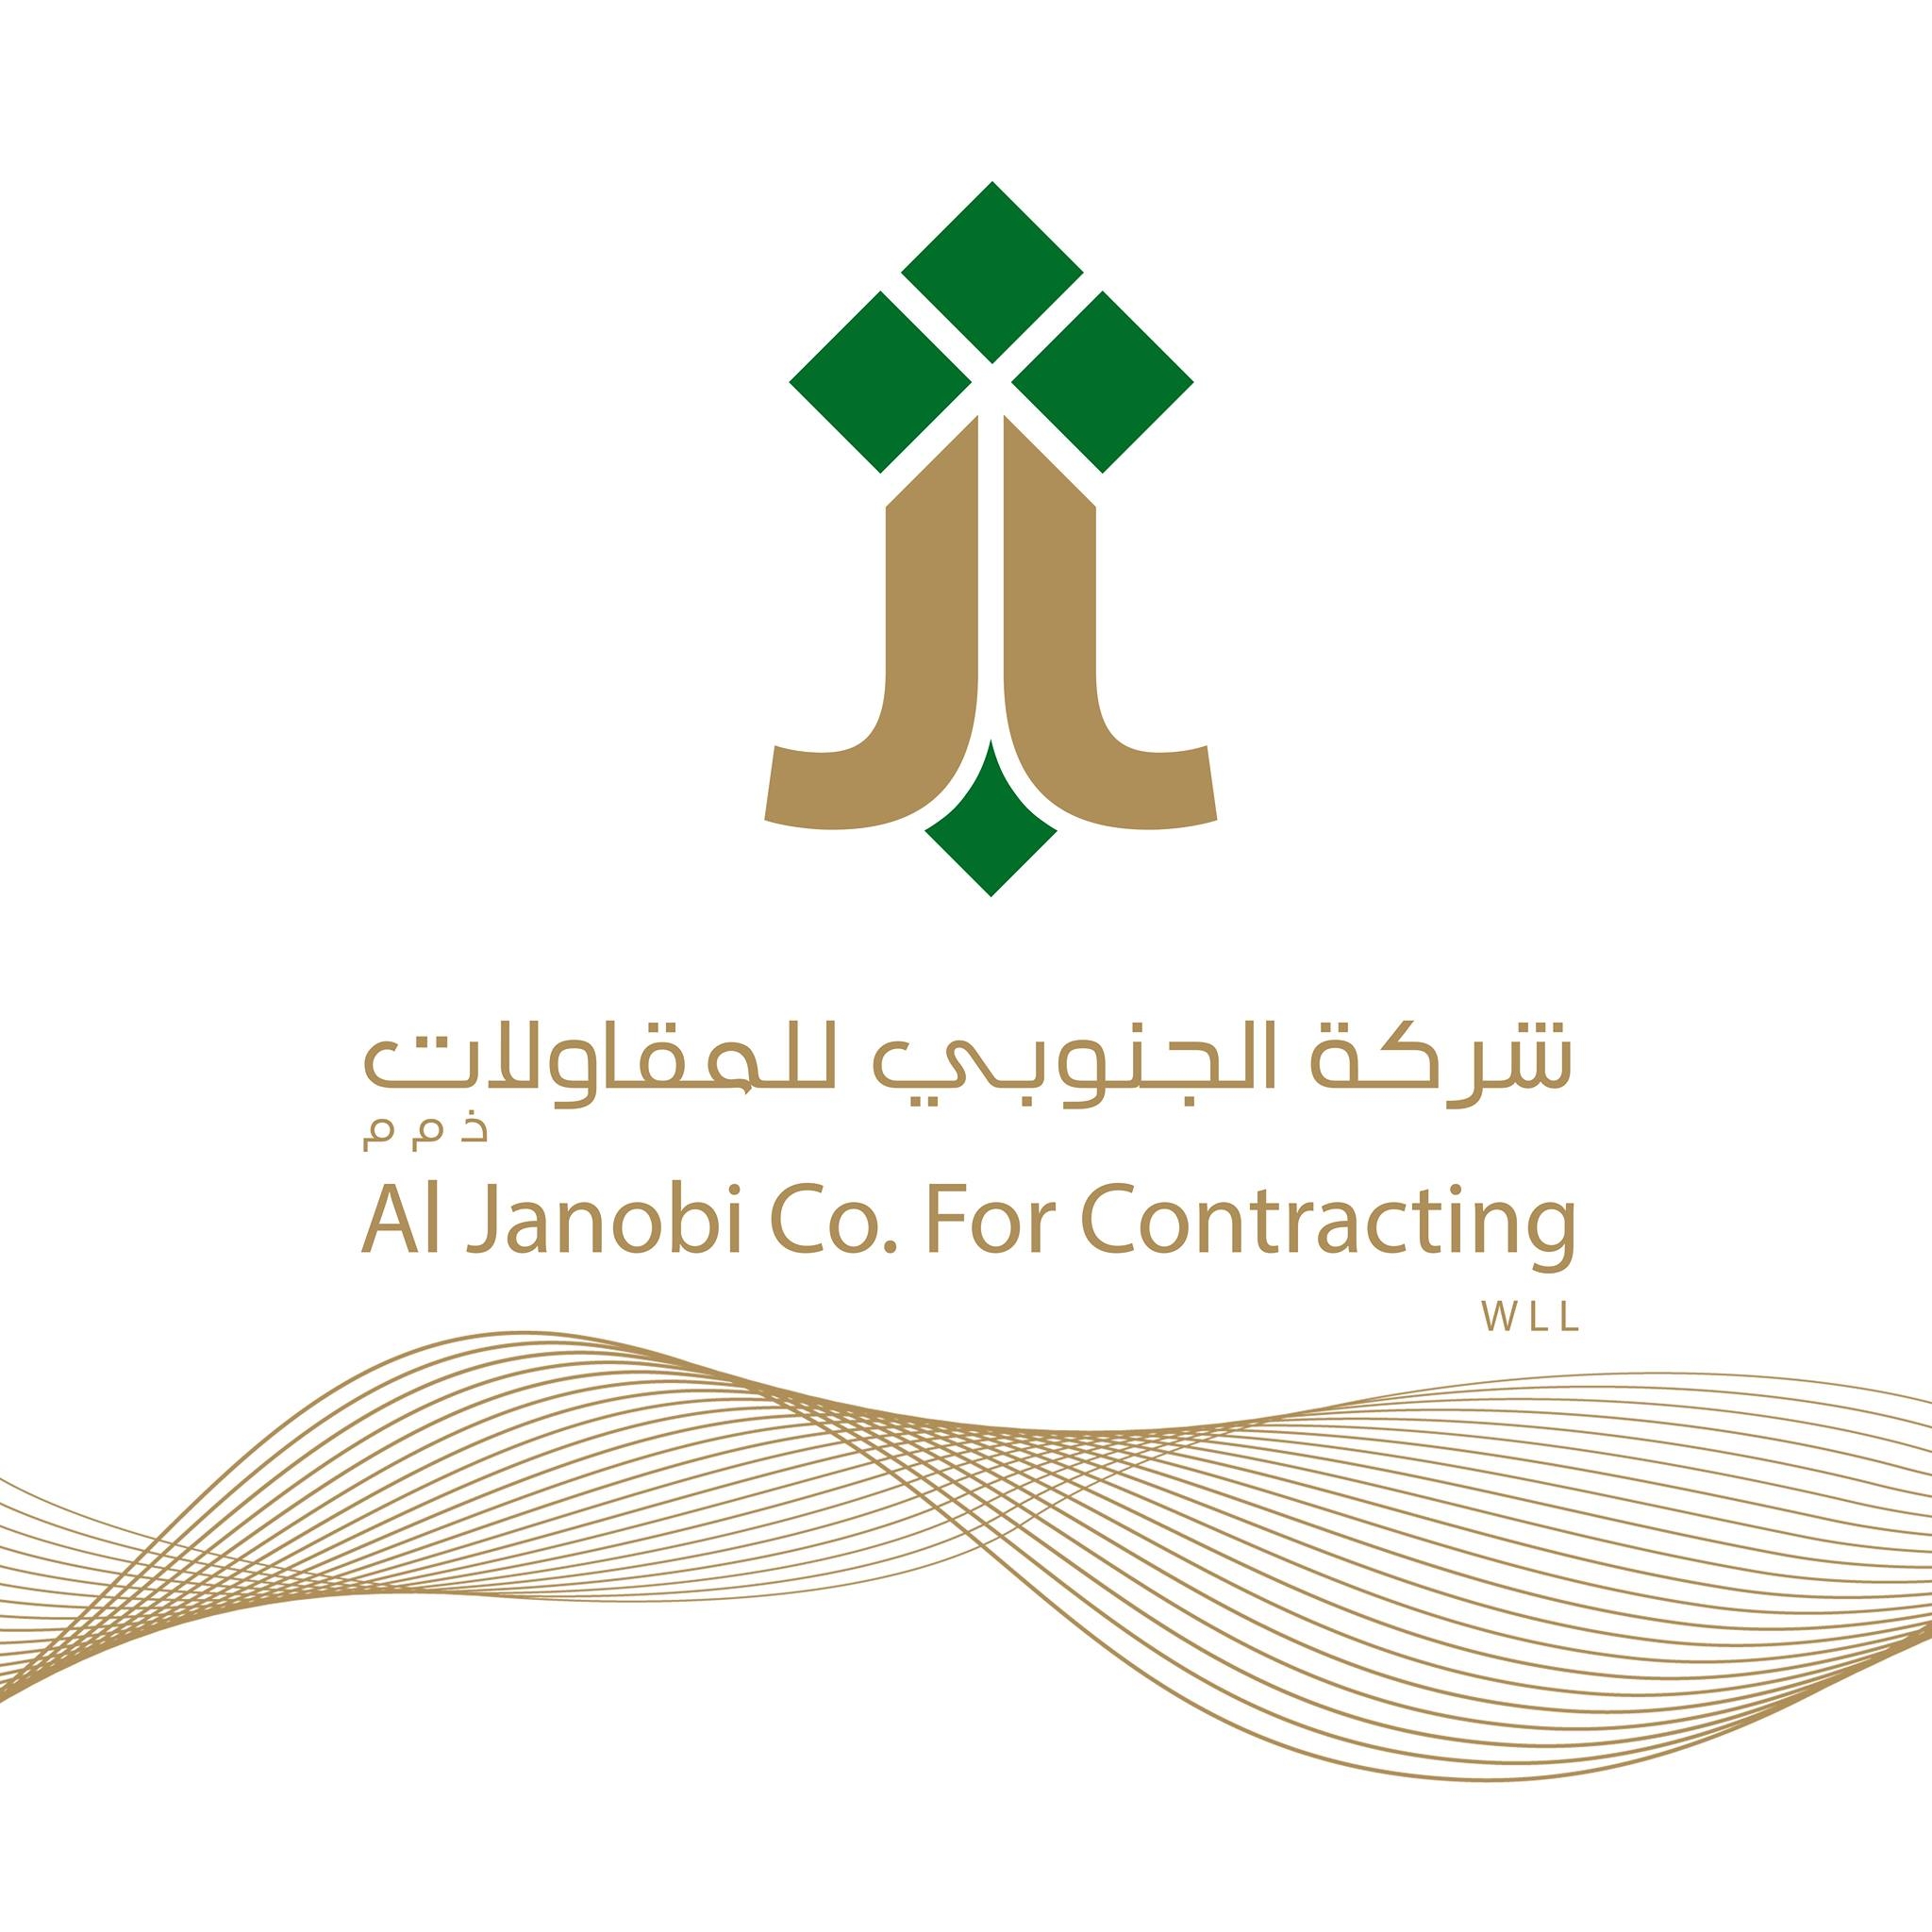 Al Janobi Company